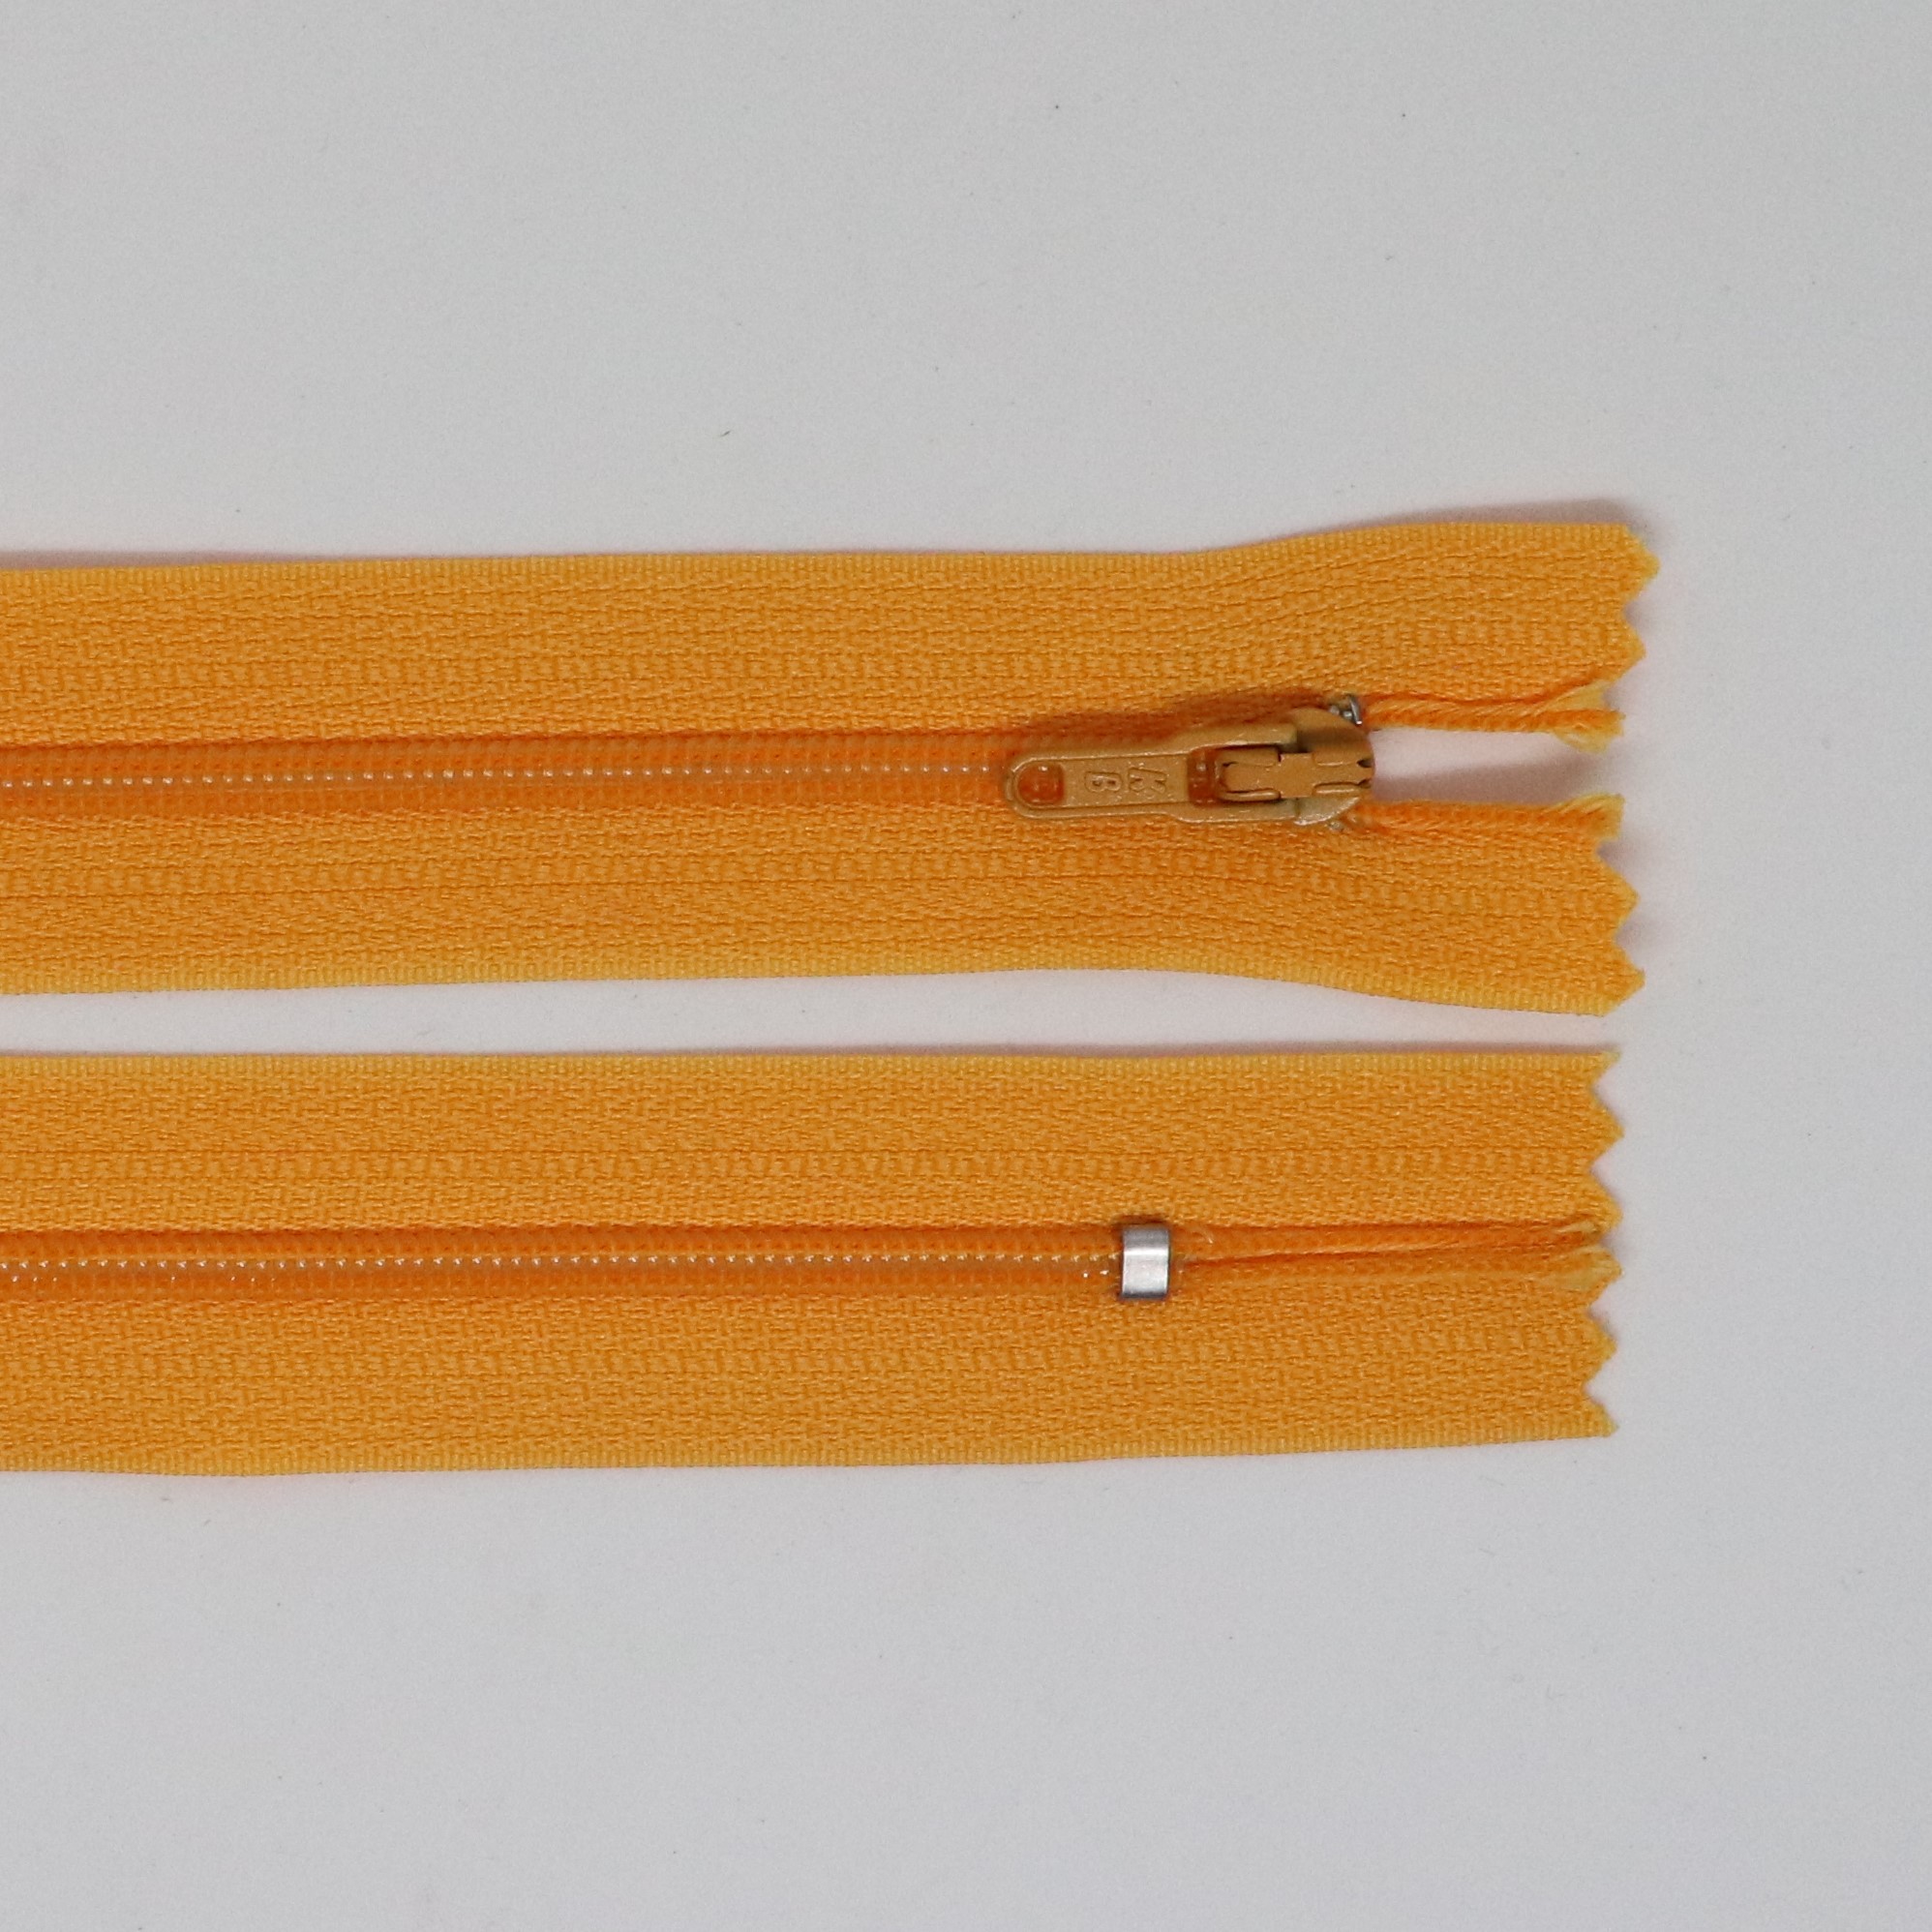 Spirálový zip, šíøe 3 mm, délka 35 cm, oranžová - zvìtšit obrázek